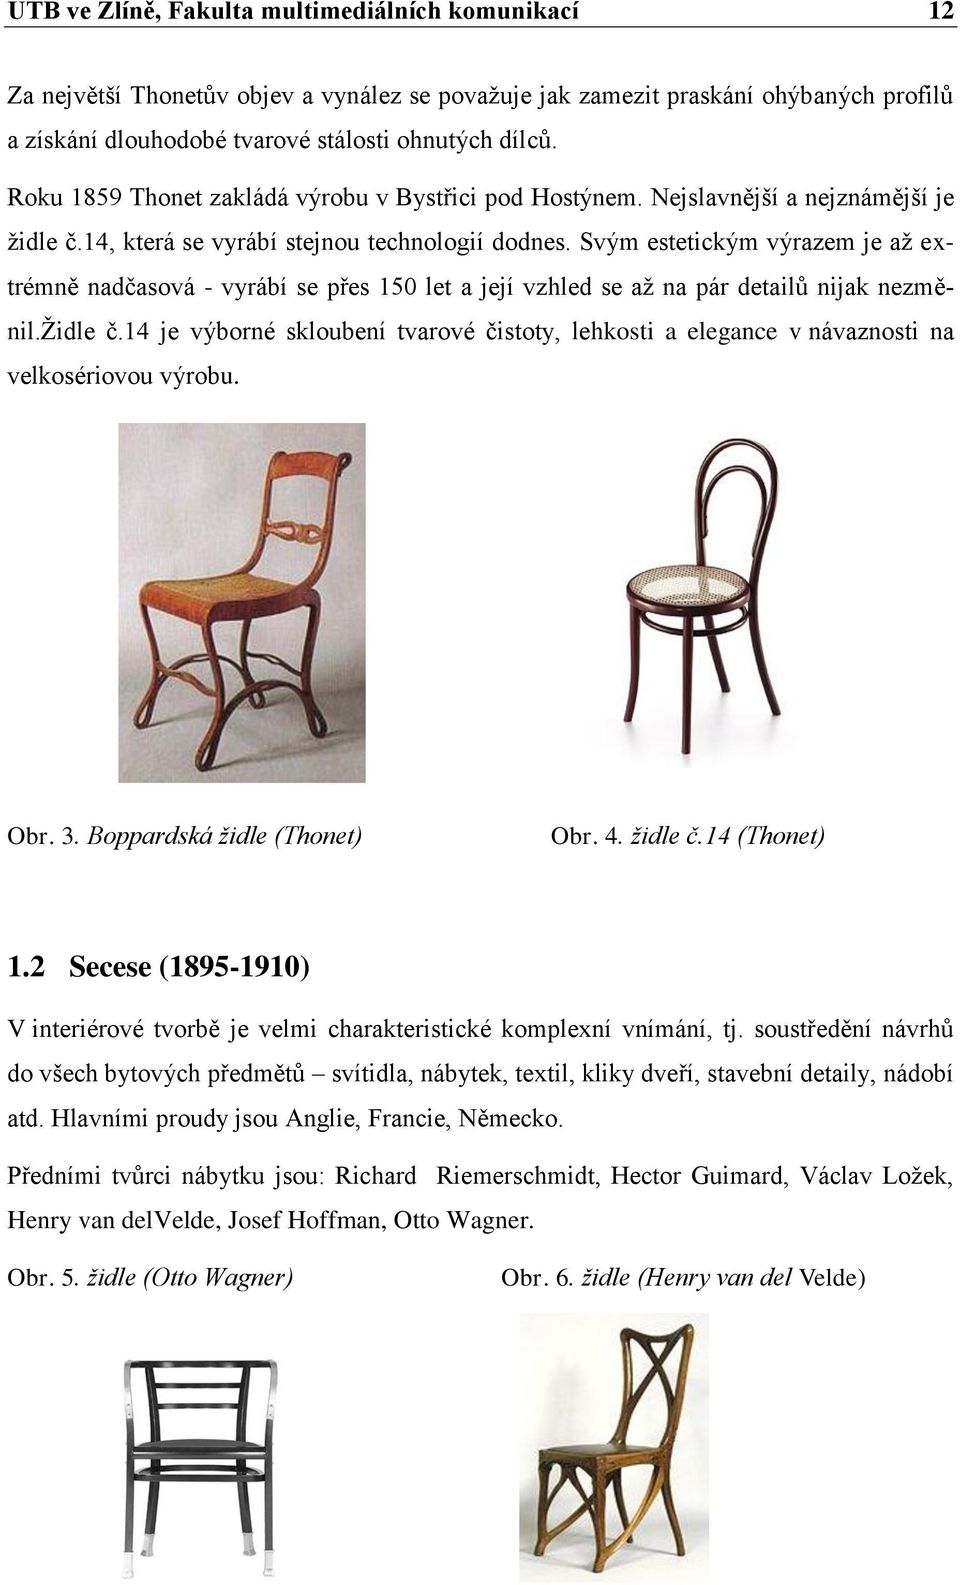 Design sedacího nábytku návrh židle pro TON a.s. Ondřej Tichý - PDF Stažení  zdarma